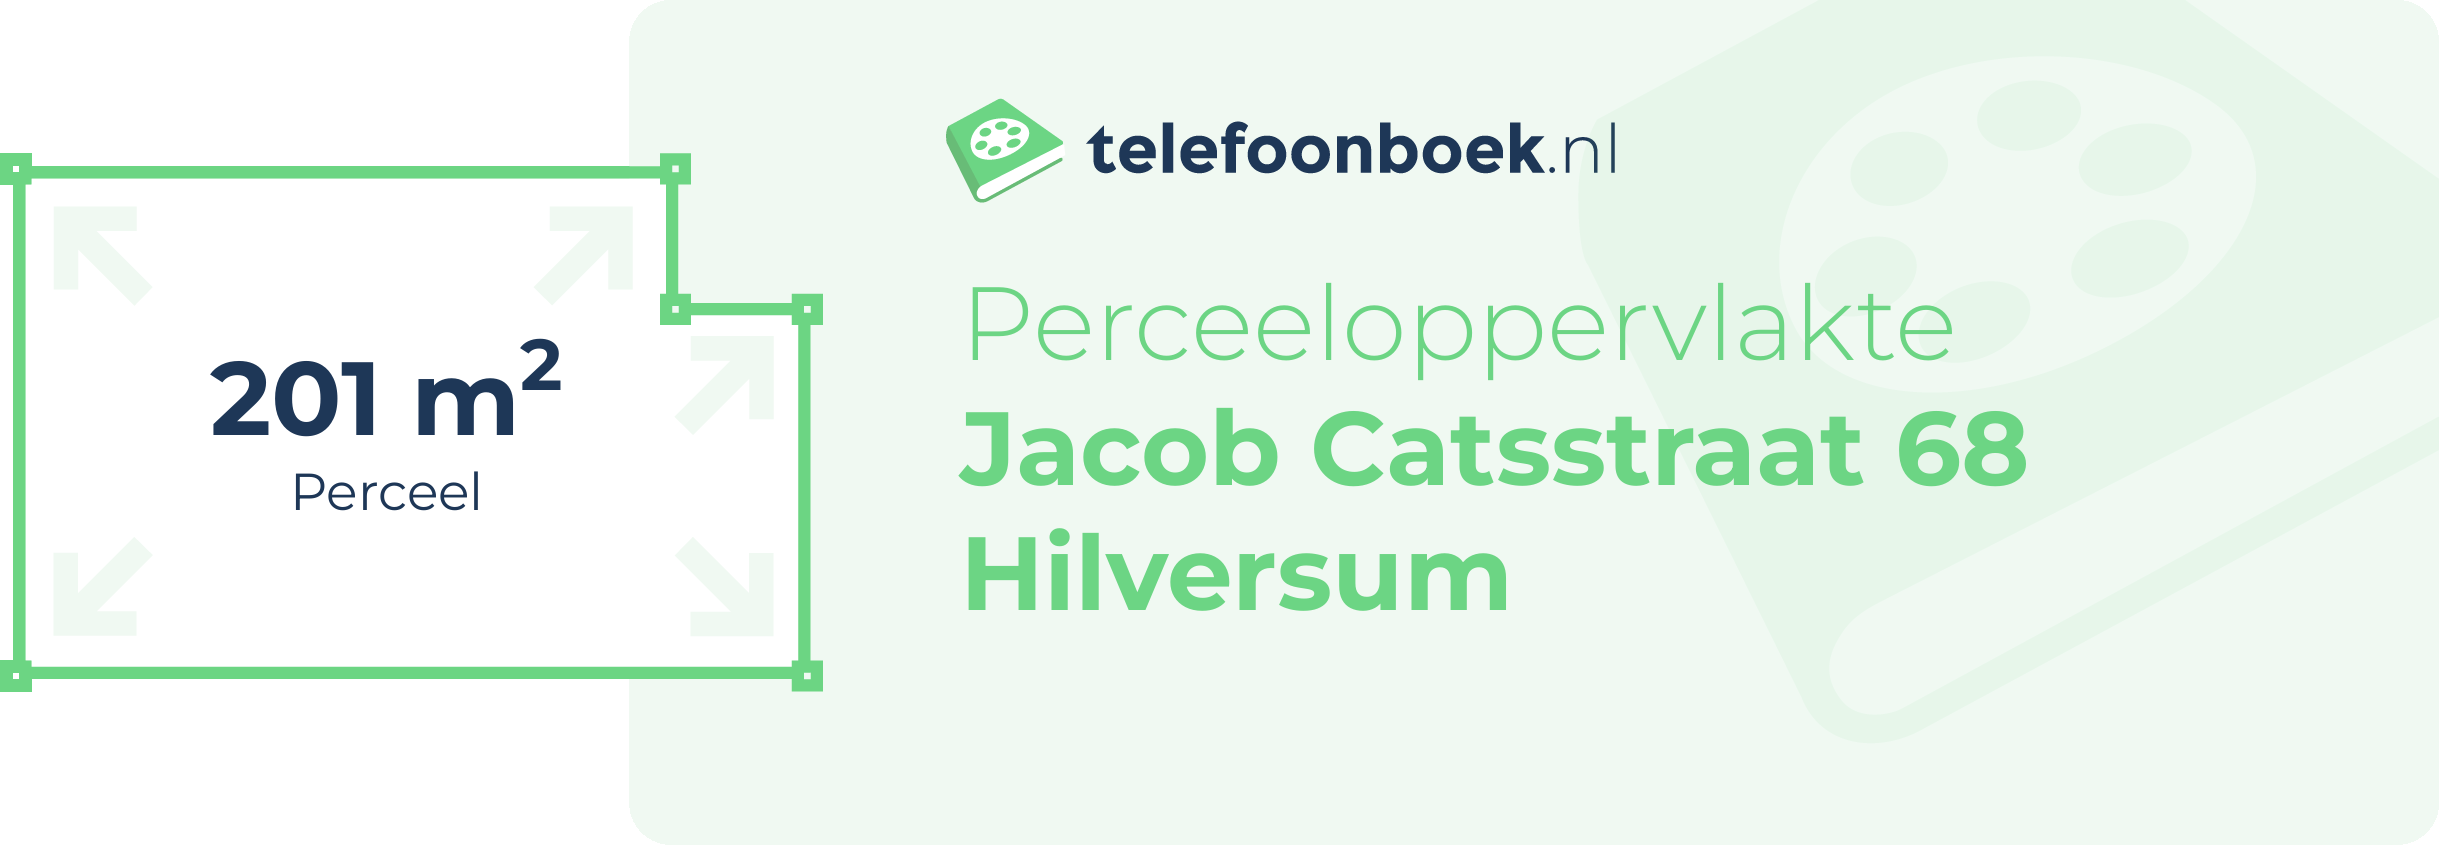 Perceeloppervlakte Jacob Catsstraat 68 Hilversum